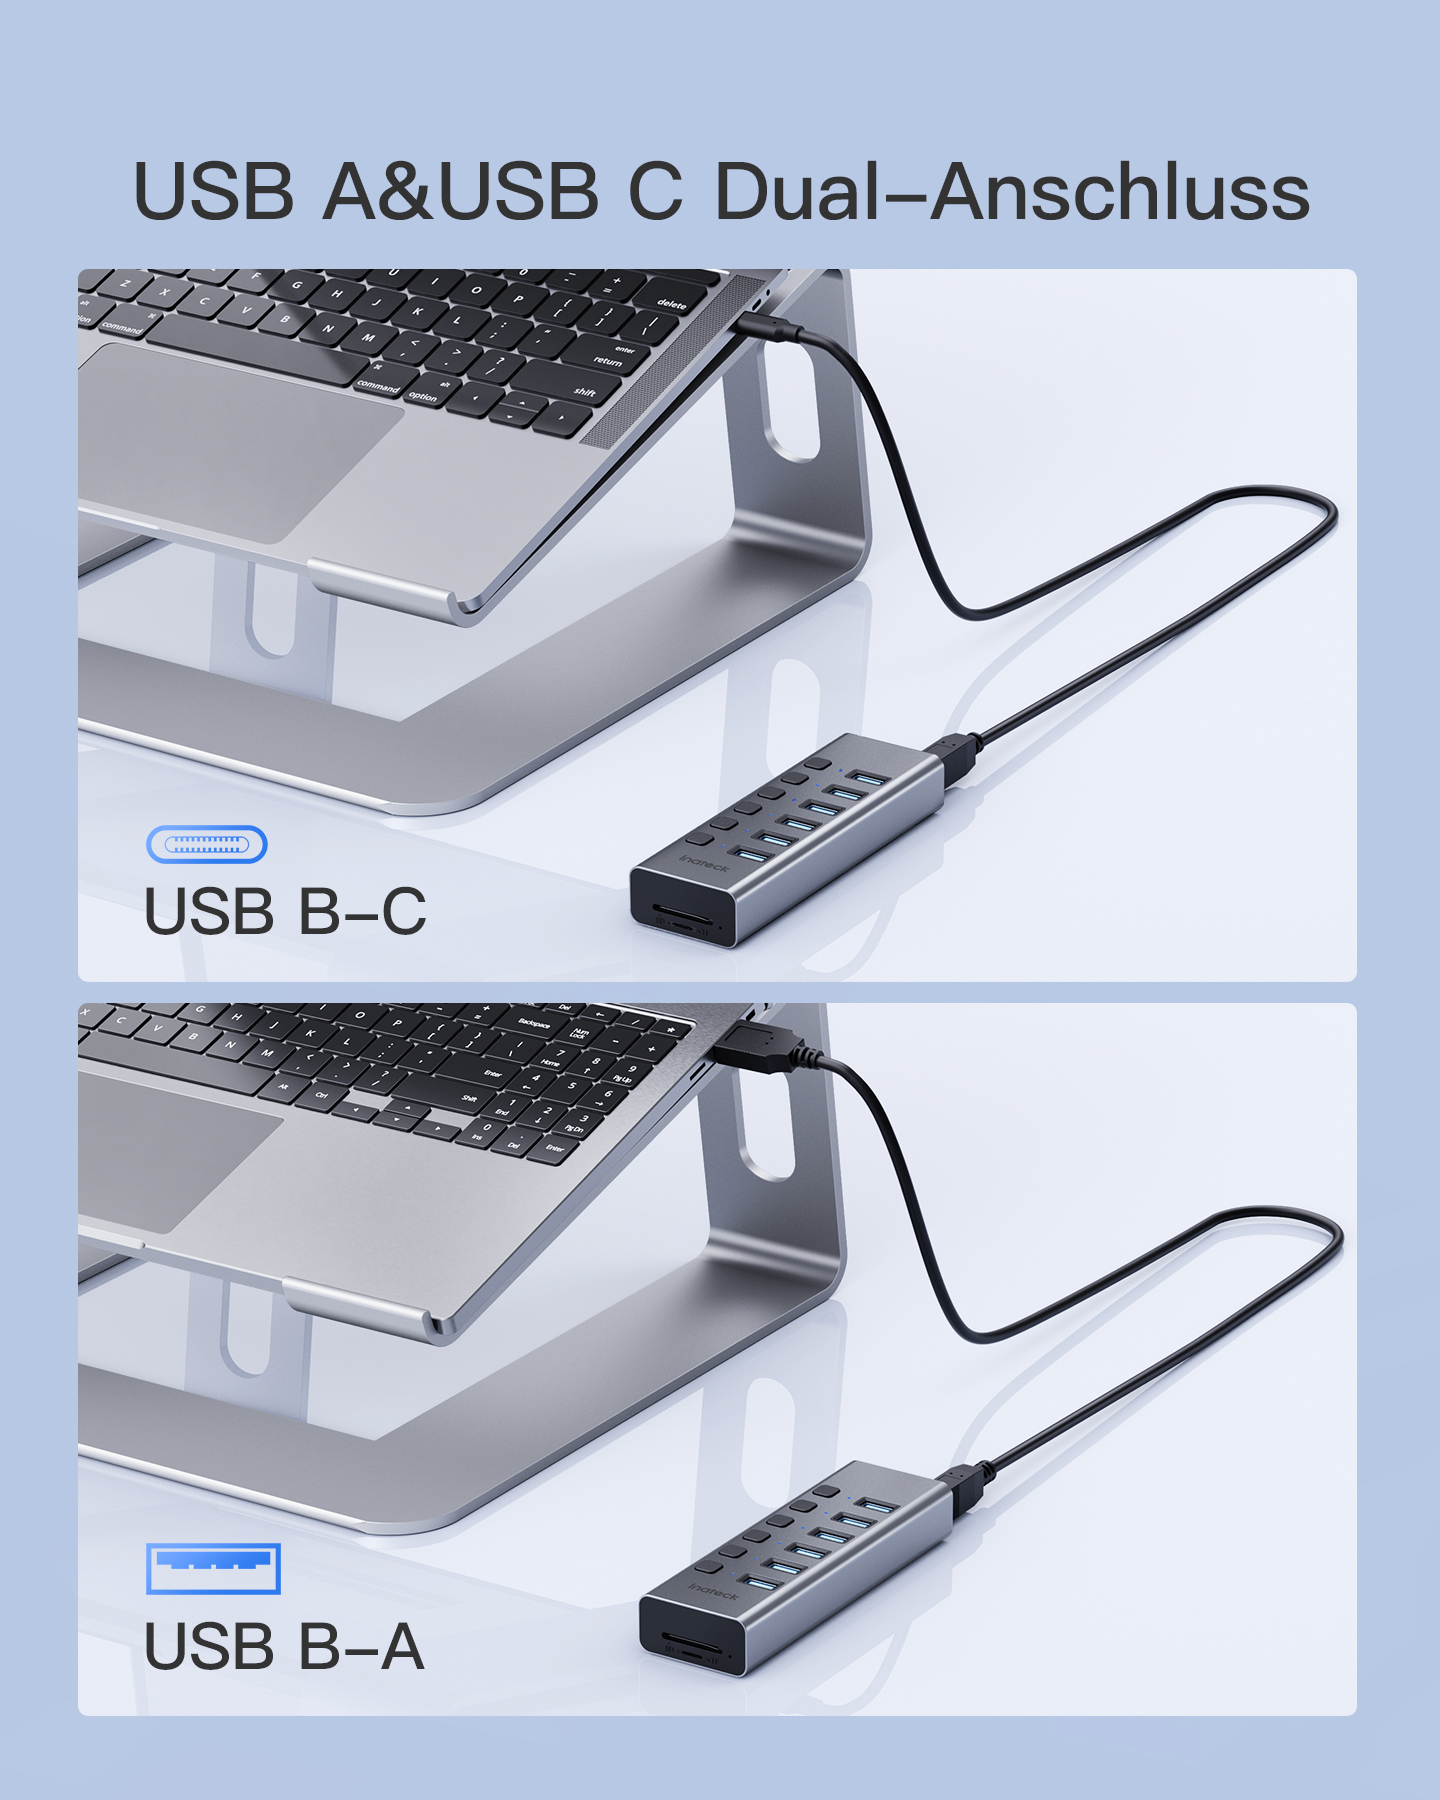 INATECK USB USB-A USB-Adapter hub mit Ports USB und 8-in-1 Schaltern, 3.0, aktiv 6 Aluminium unabhängigen SD/TF Hub